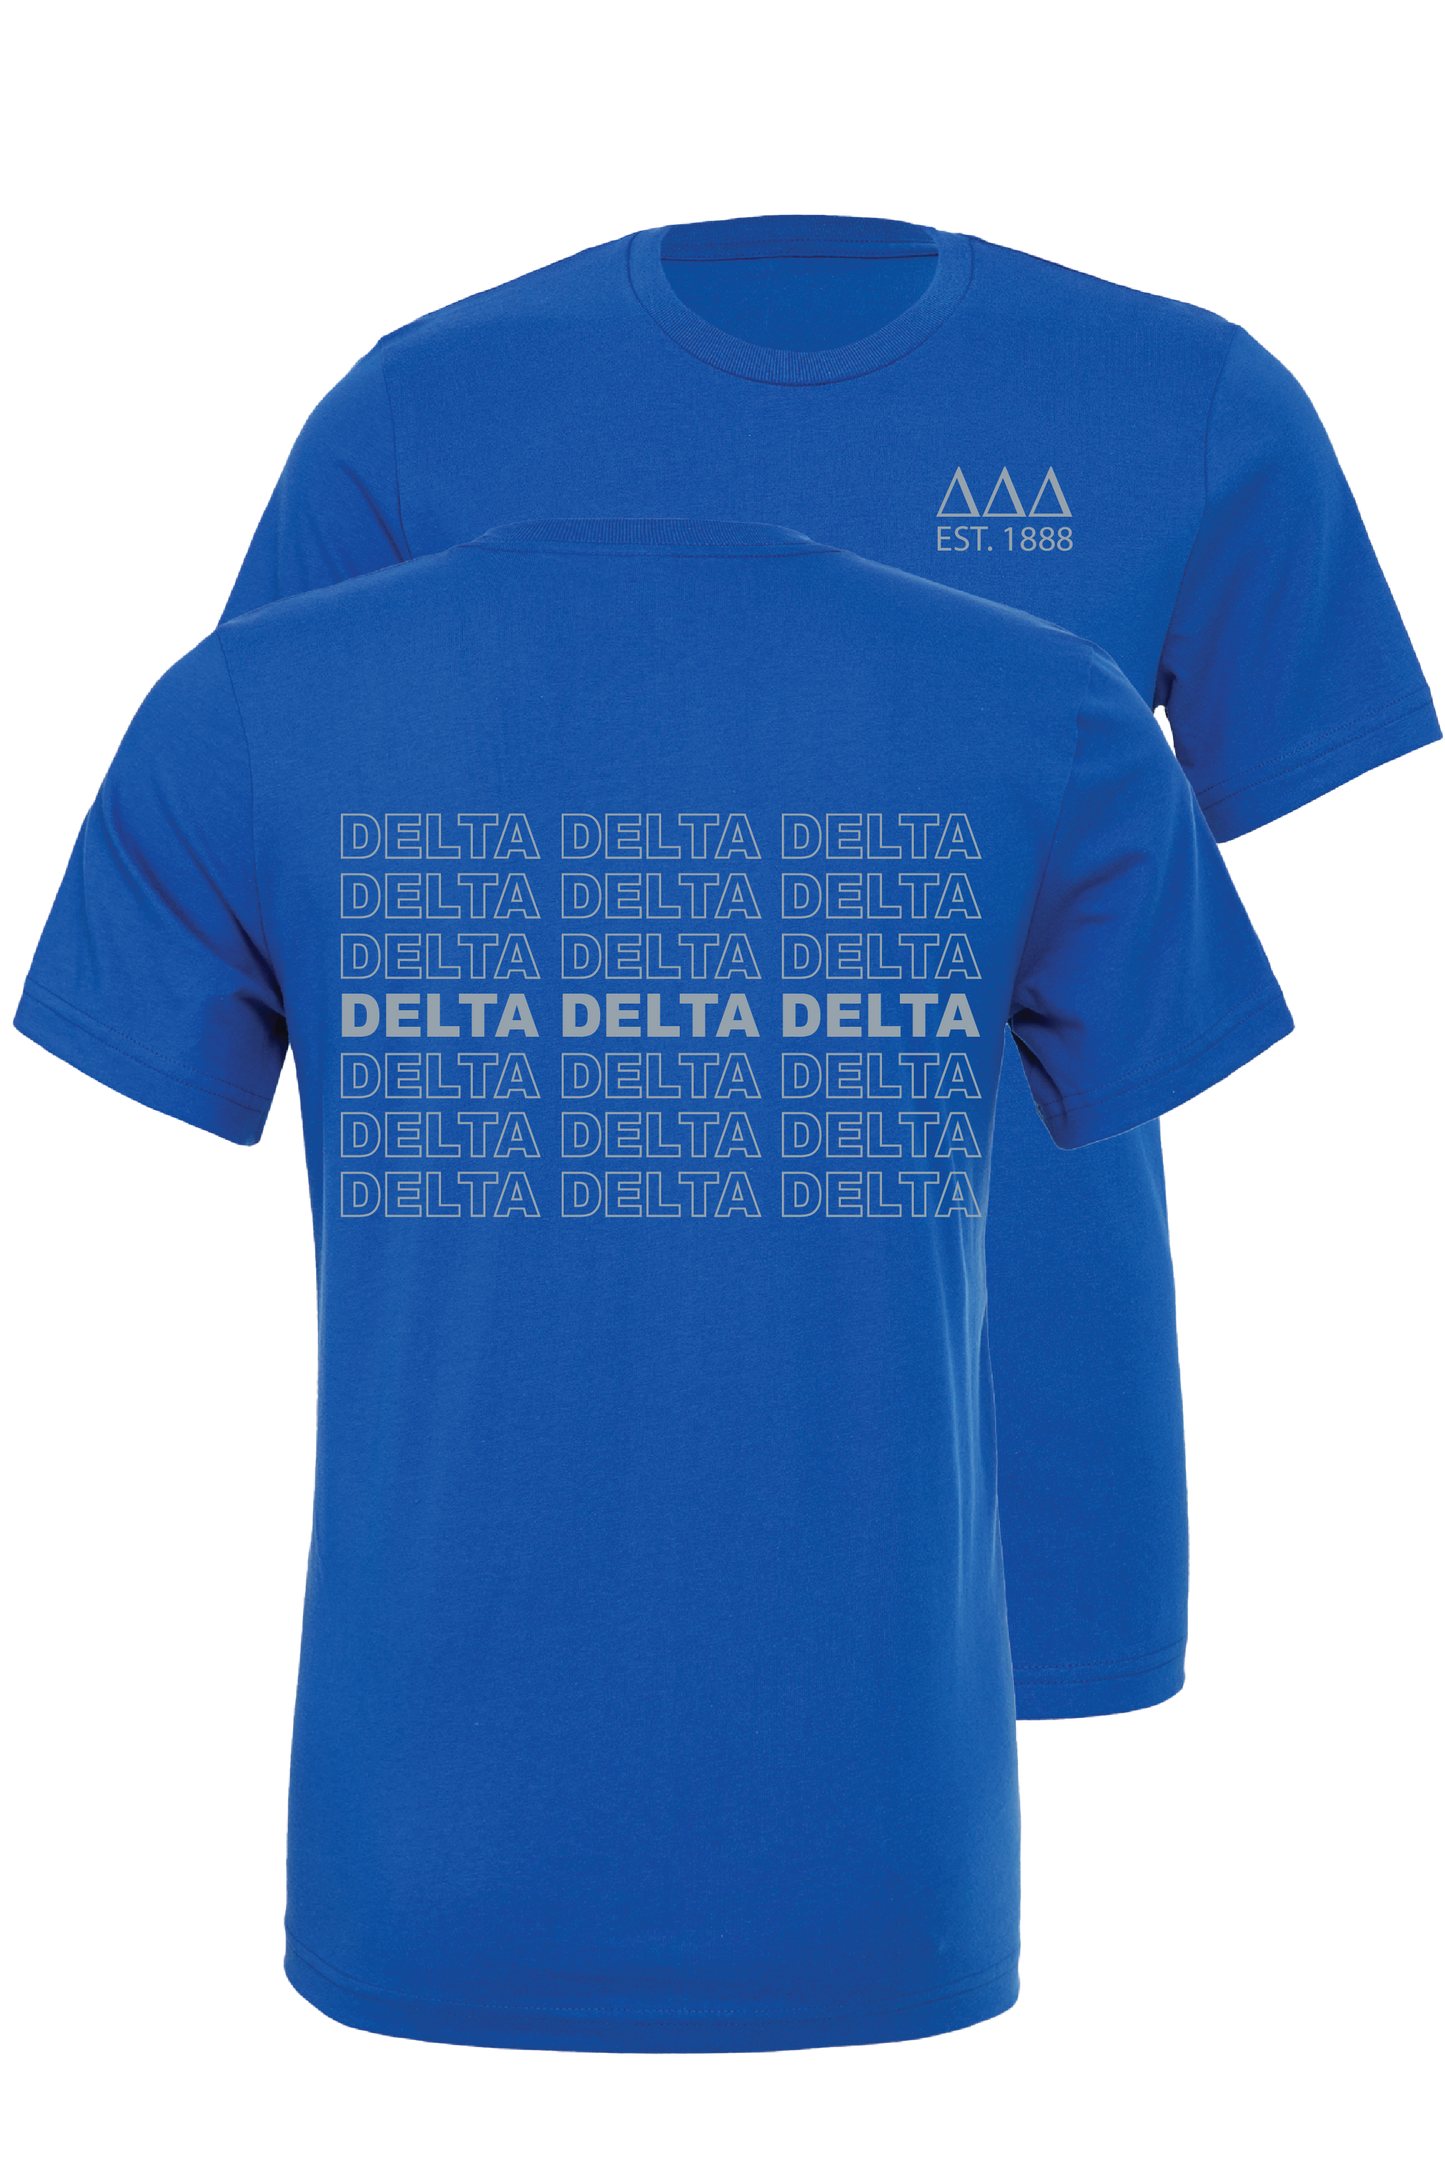 Delta Delta Delta Repeating Name Short Sleeve T-Shirts